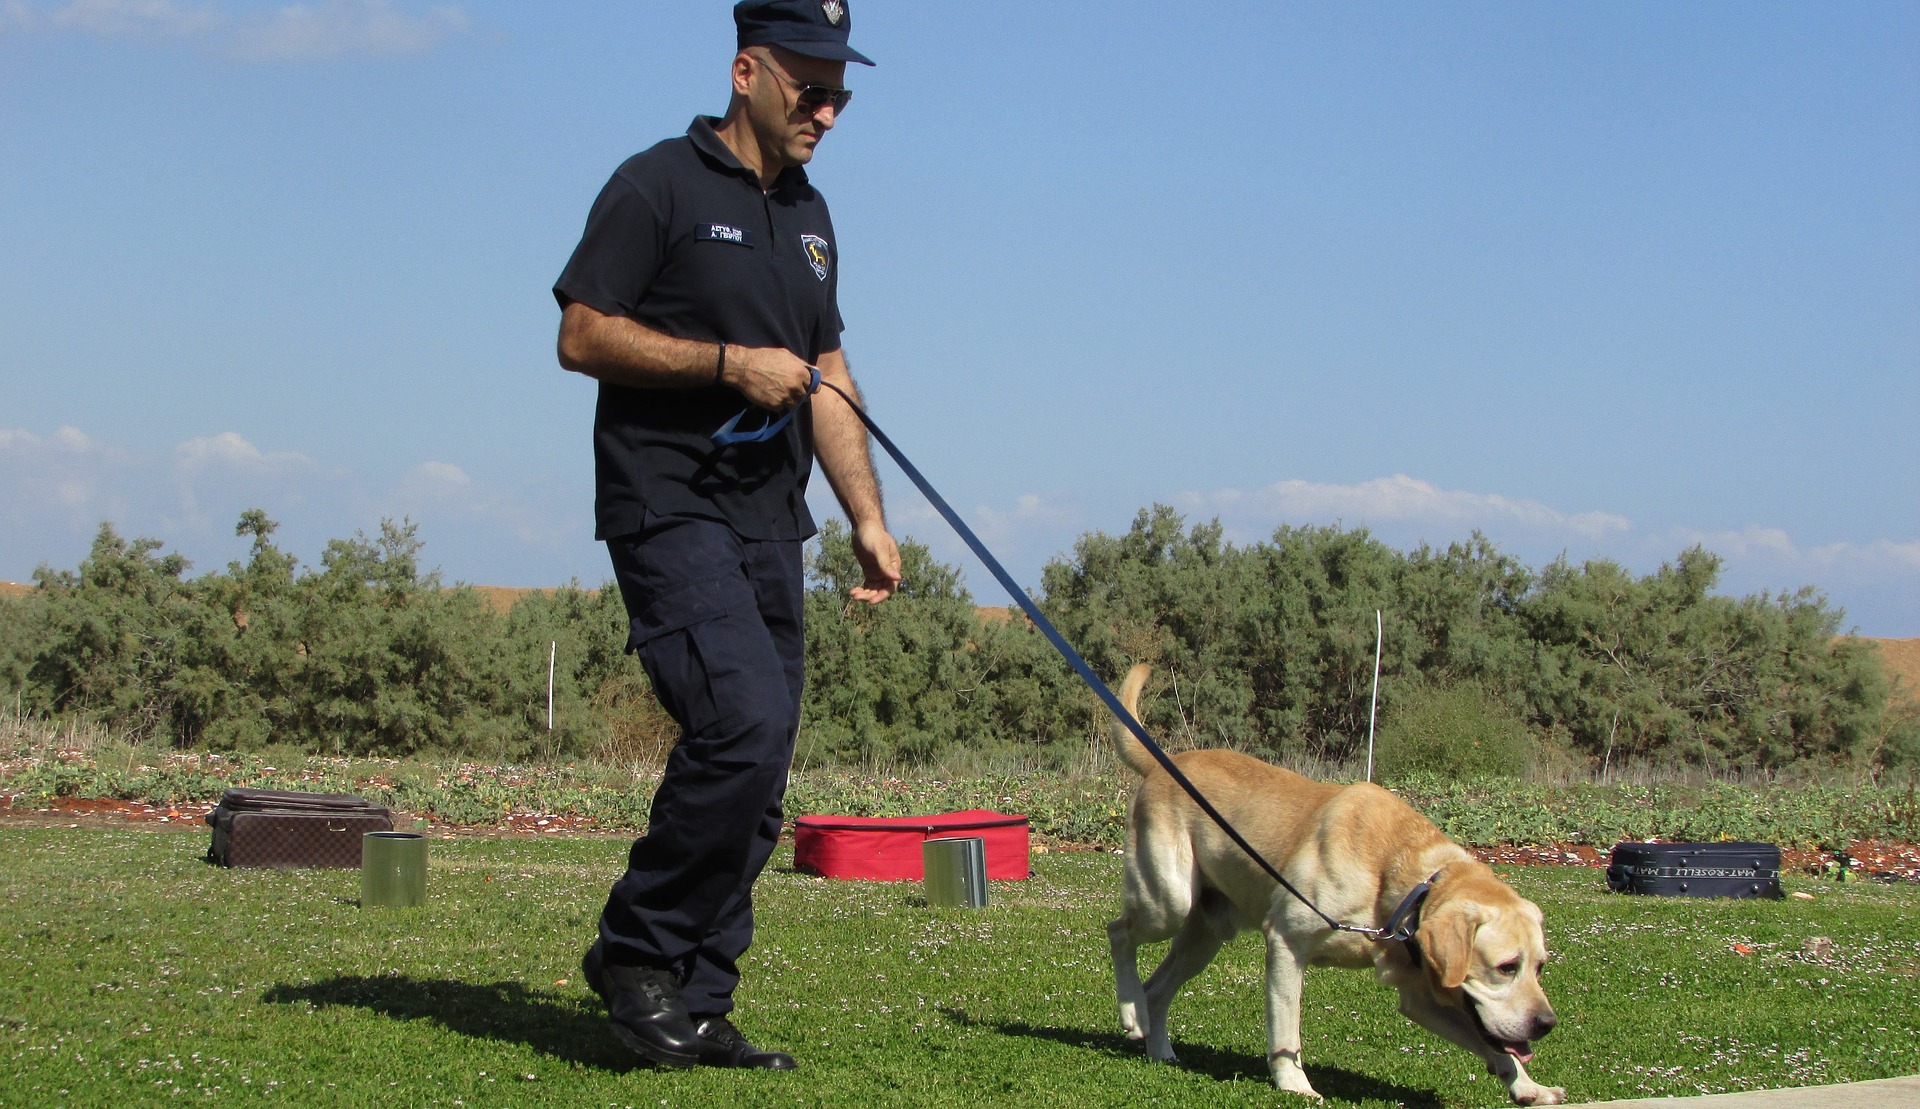 Un chien policier est formé dès l'enfance à certaines activités. Certaines races, comme le berger allemand, sont prédisposées au travail de service.